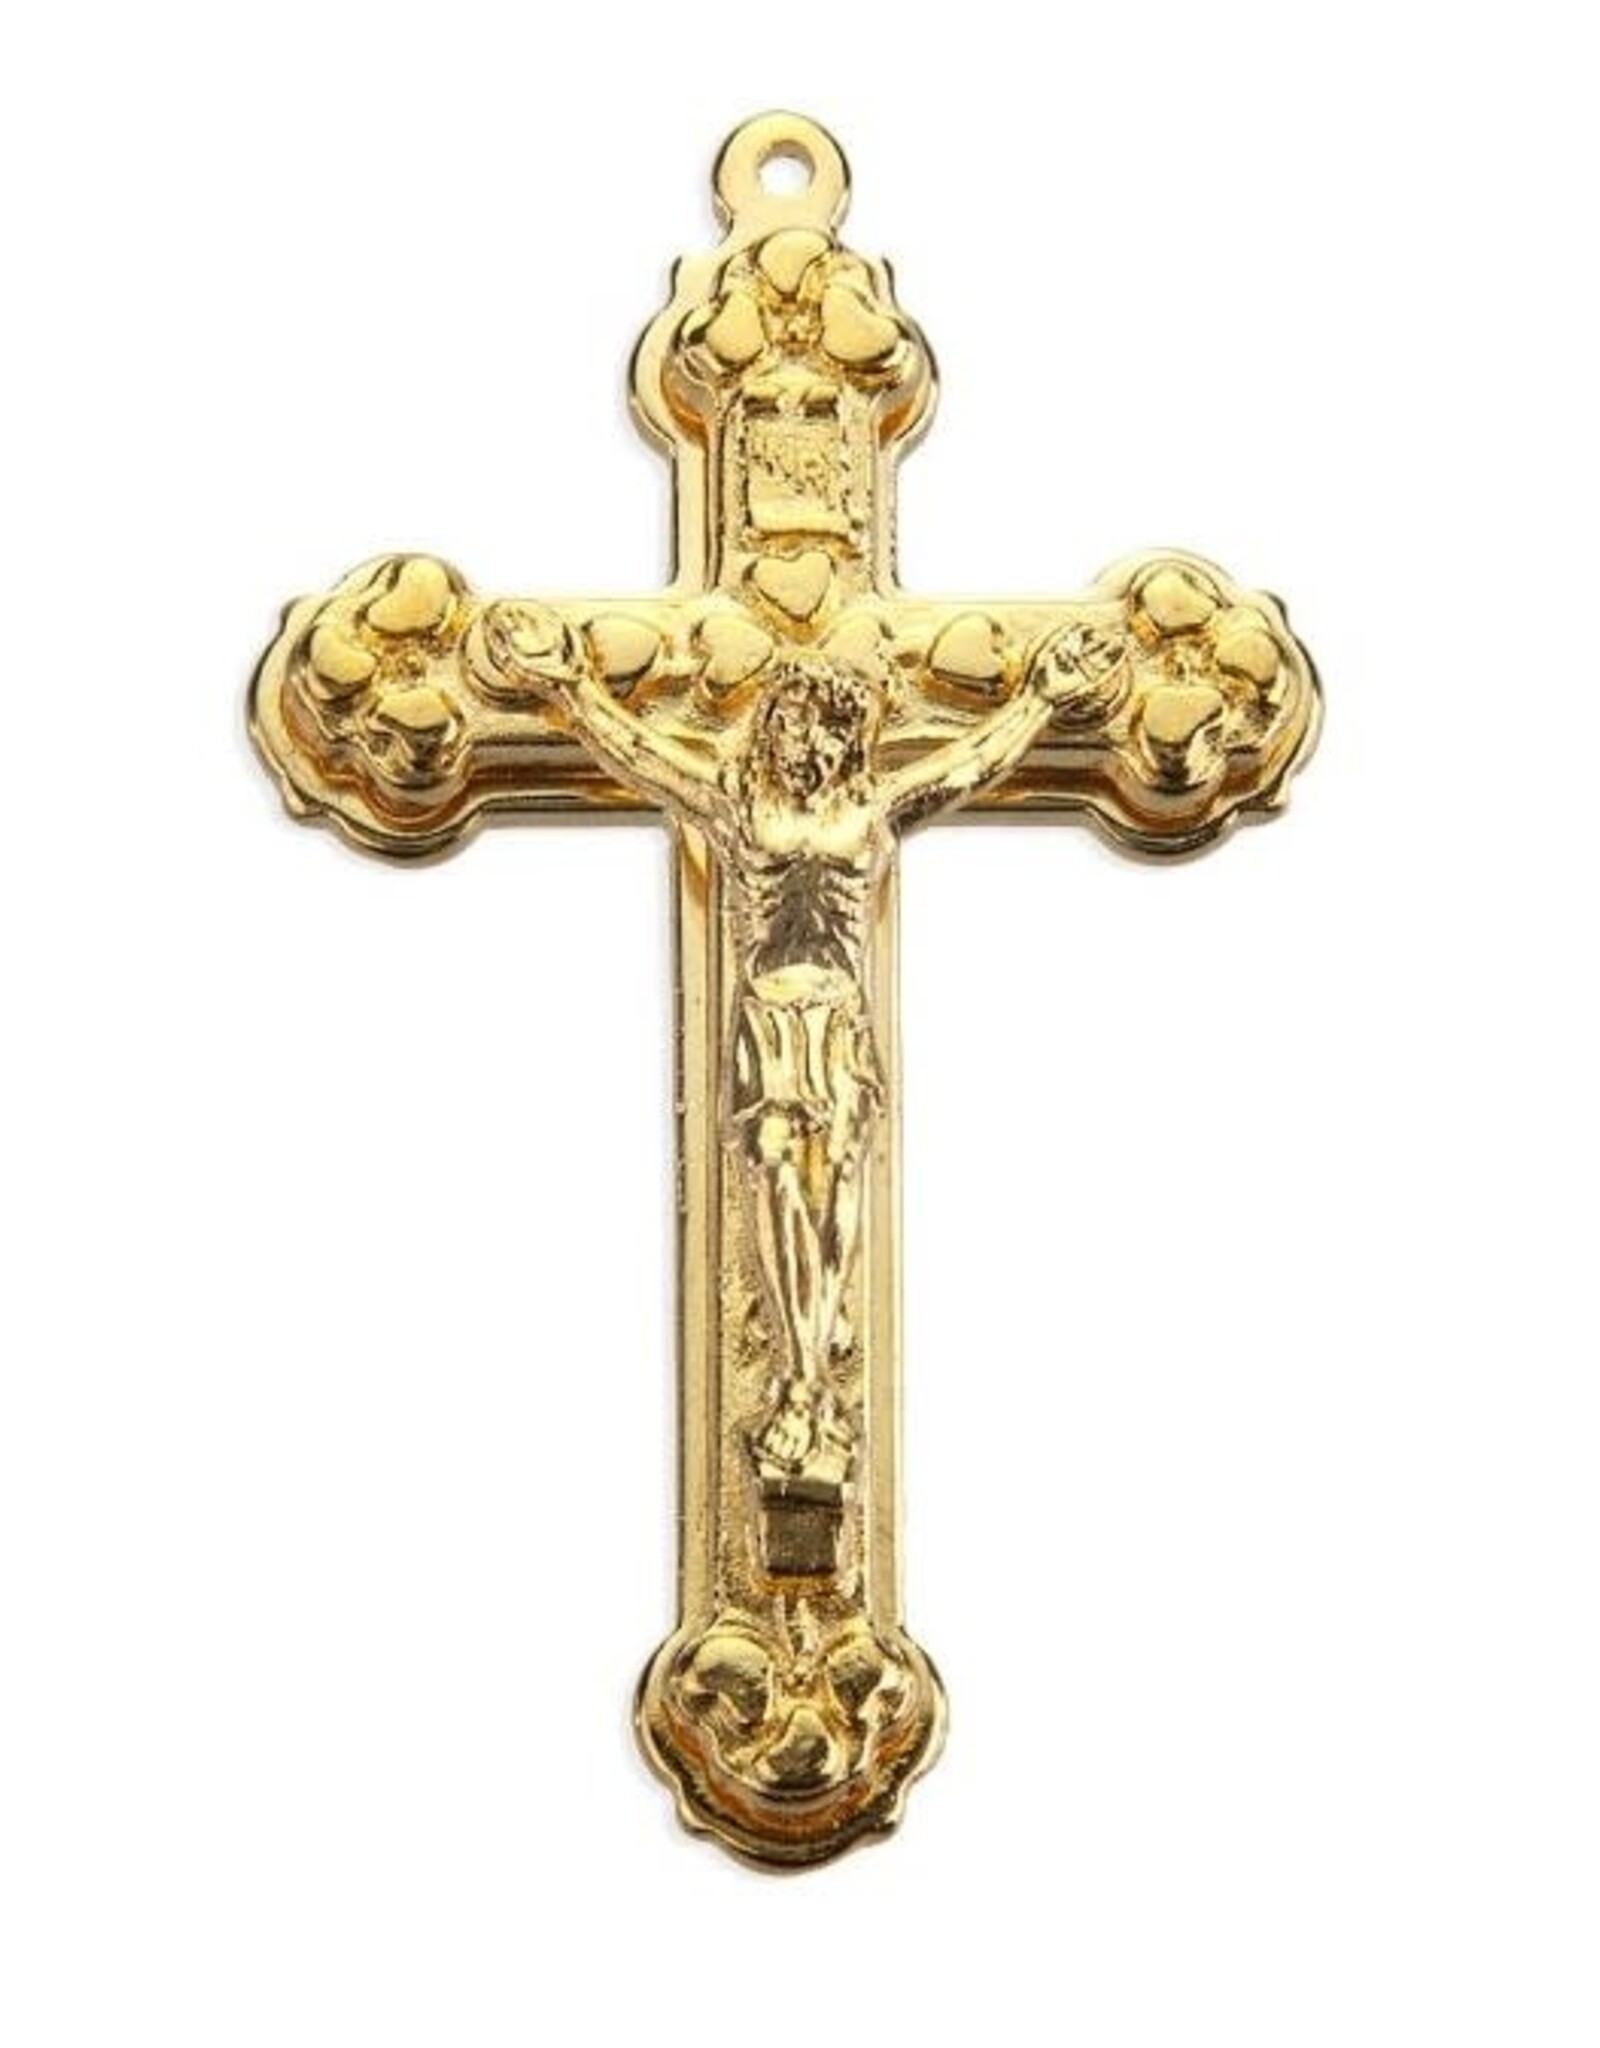 Hirten Medal Crucifix 2" Stepped Up Gold